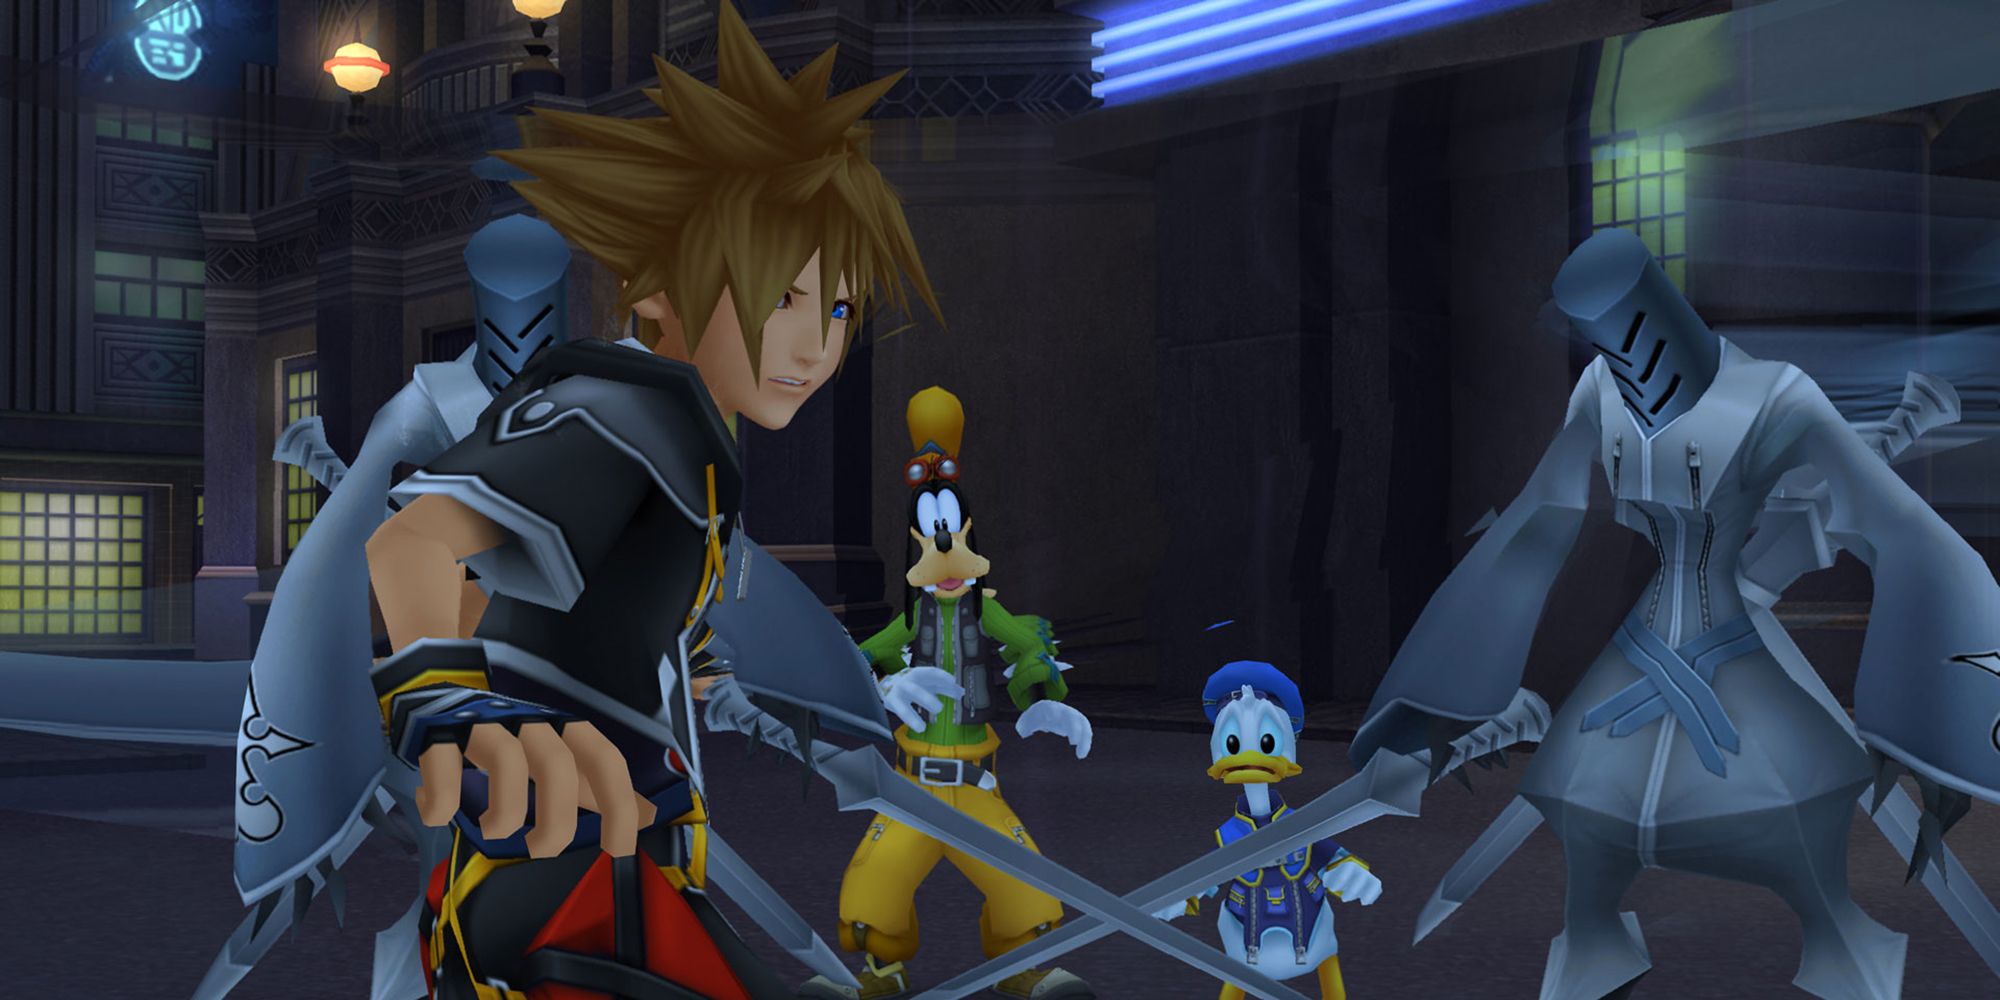 Captura de pantalla de Kingdom Hearts HD 2.5 Remix 2014, sora con donald y goofy durante un encuentro